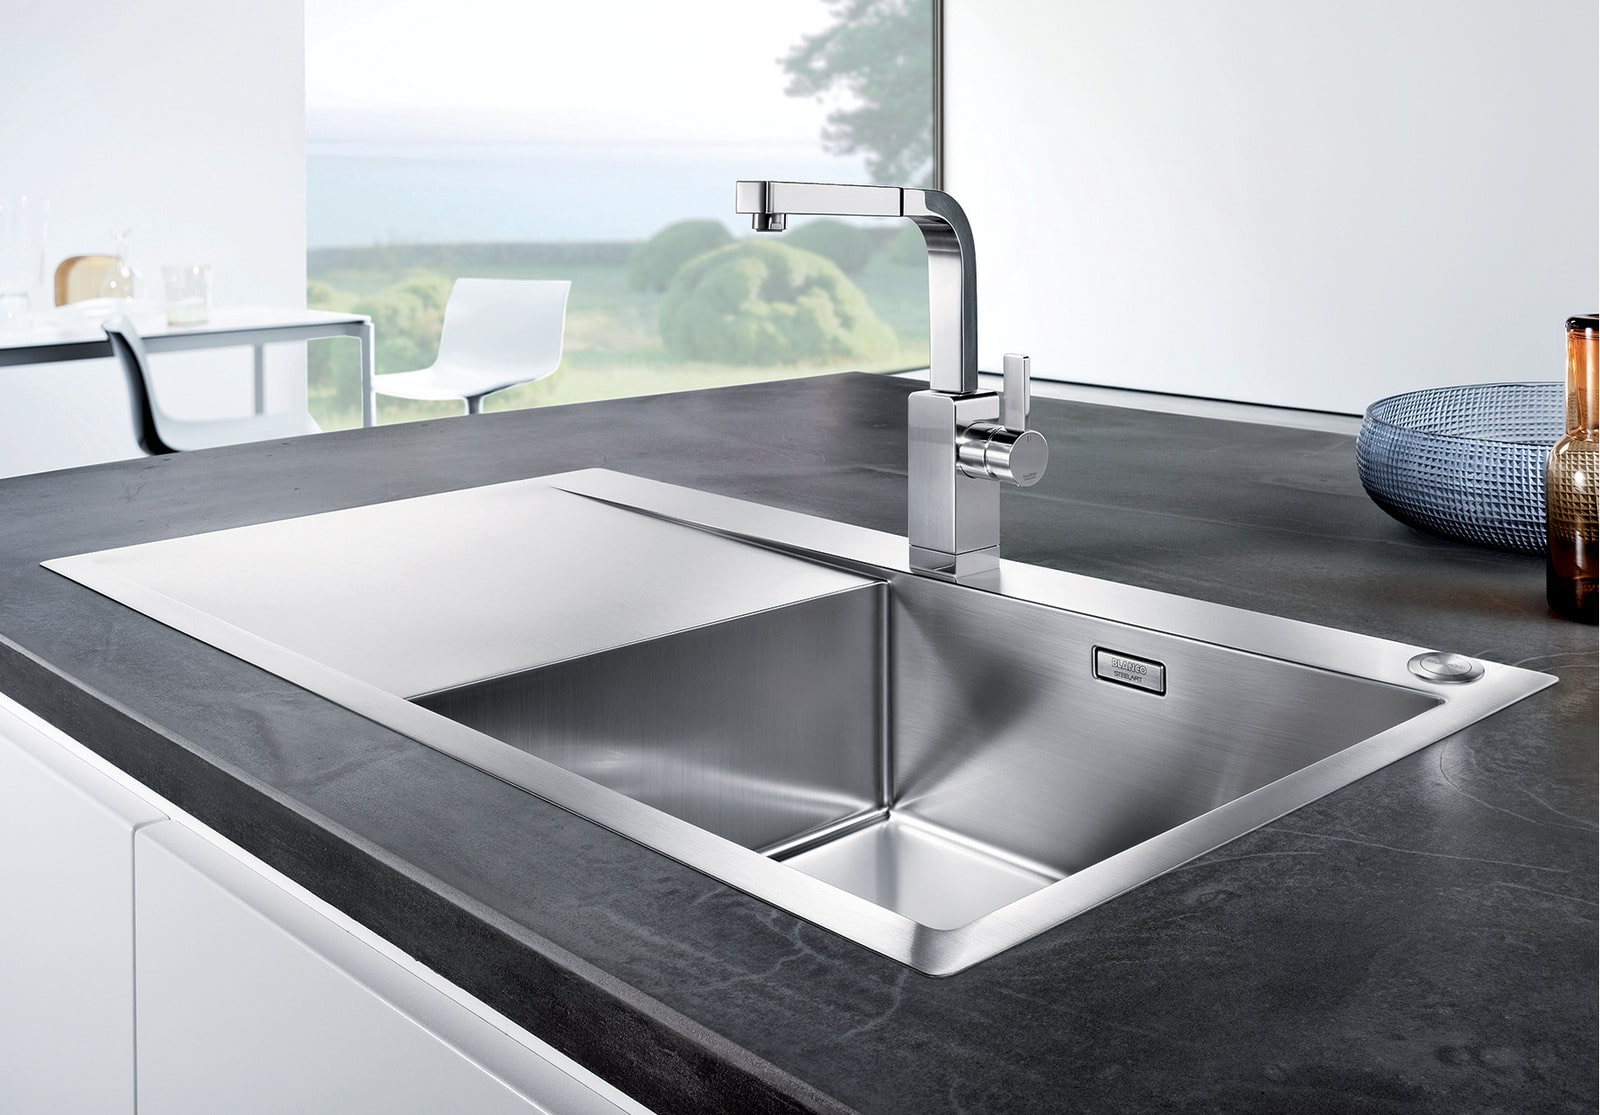 Кухонная мойка Blanco Flow XL 6 S-IF (зеркальная полировка, с клапаном-автоматом)